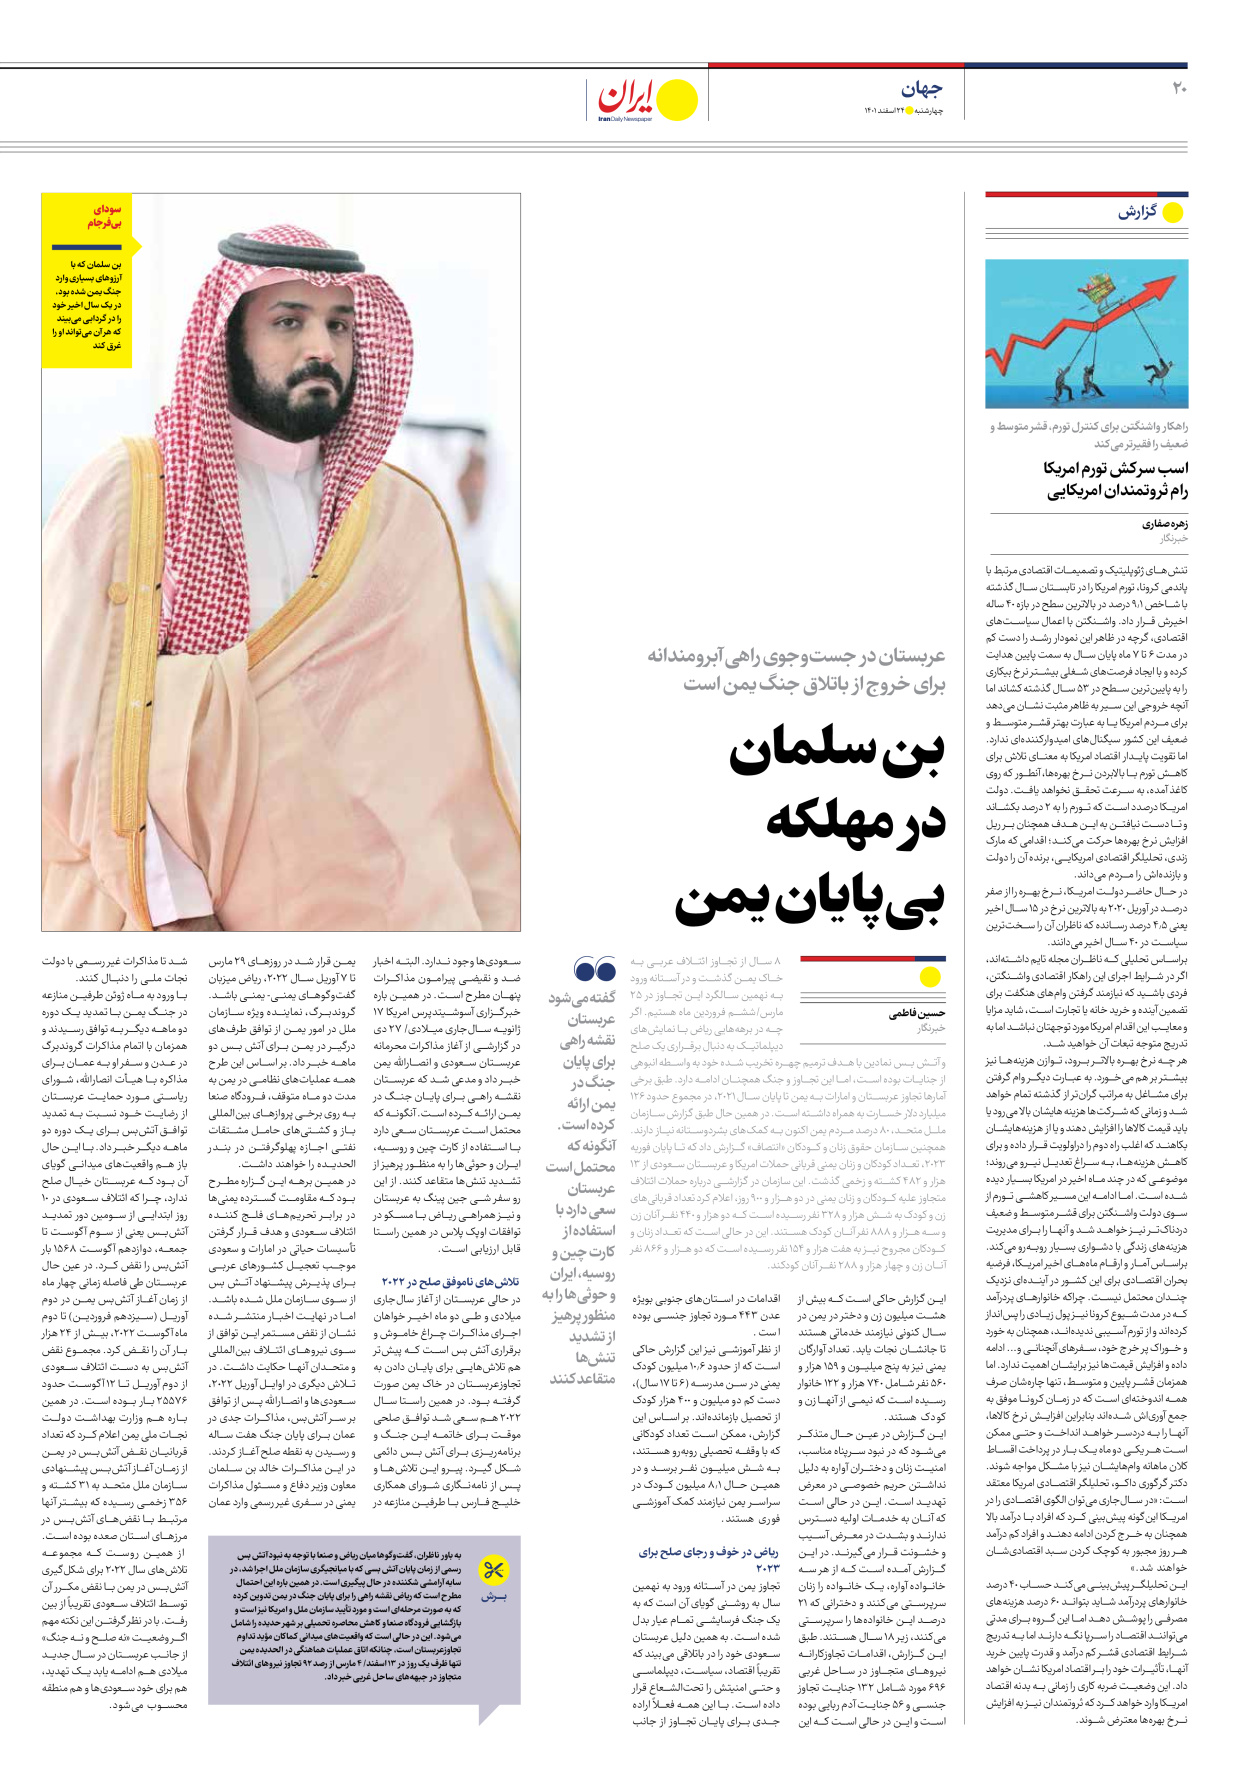 روزنامه ایران - ویژه نامه ویژه نوروز - ۲۴ اسفند ۱۴۰۱ - صفحه ۲۰